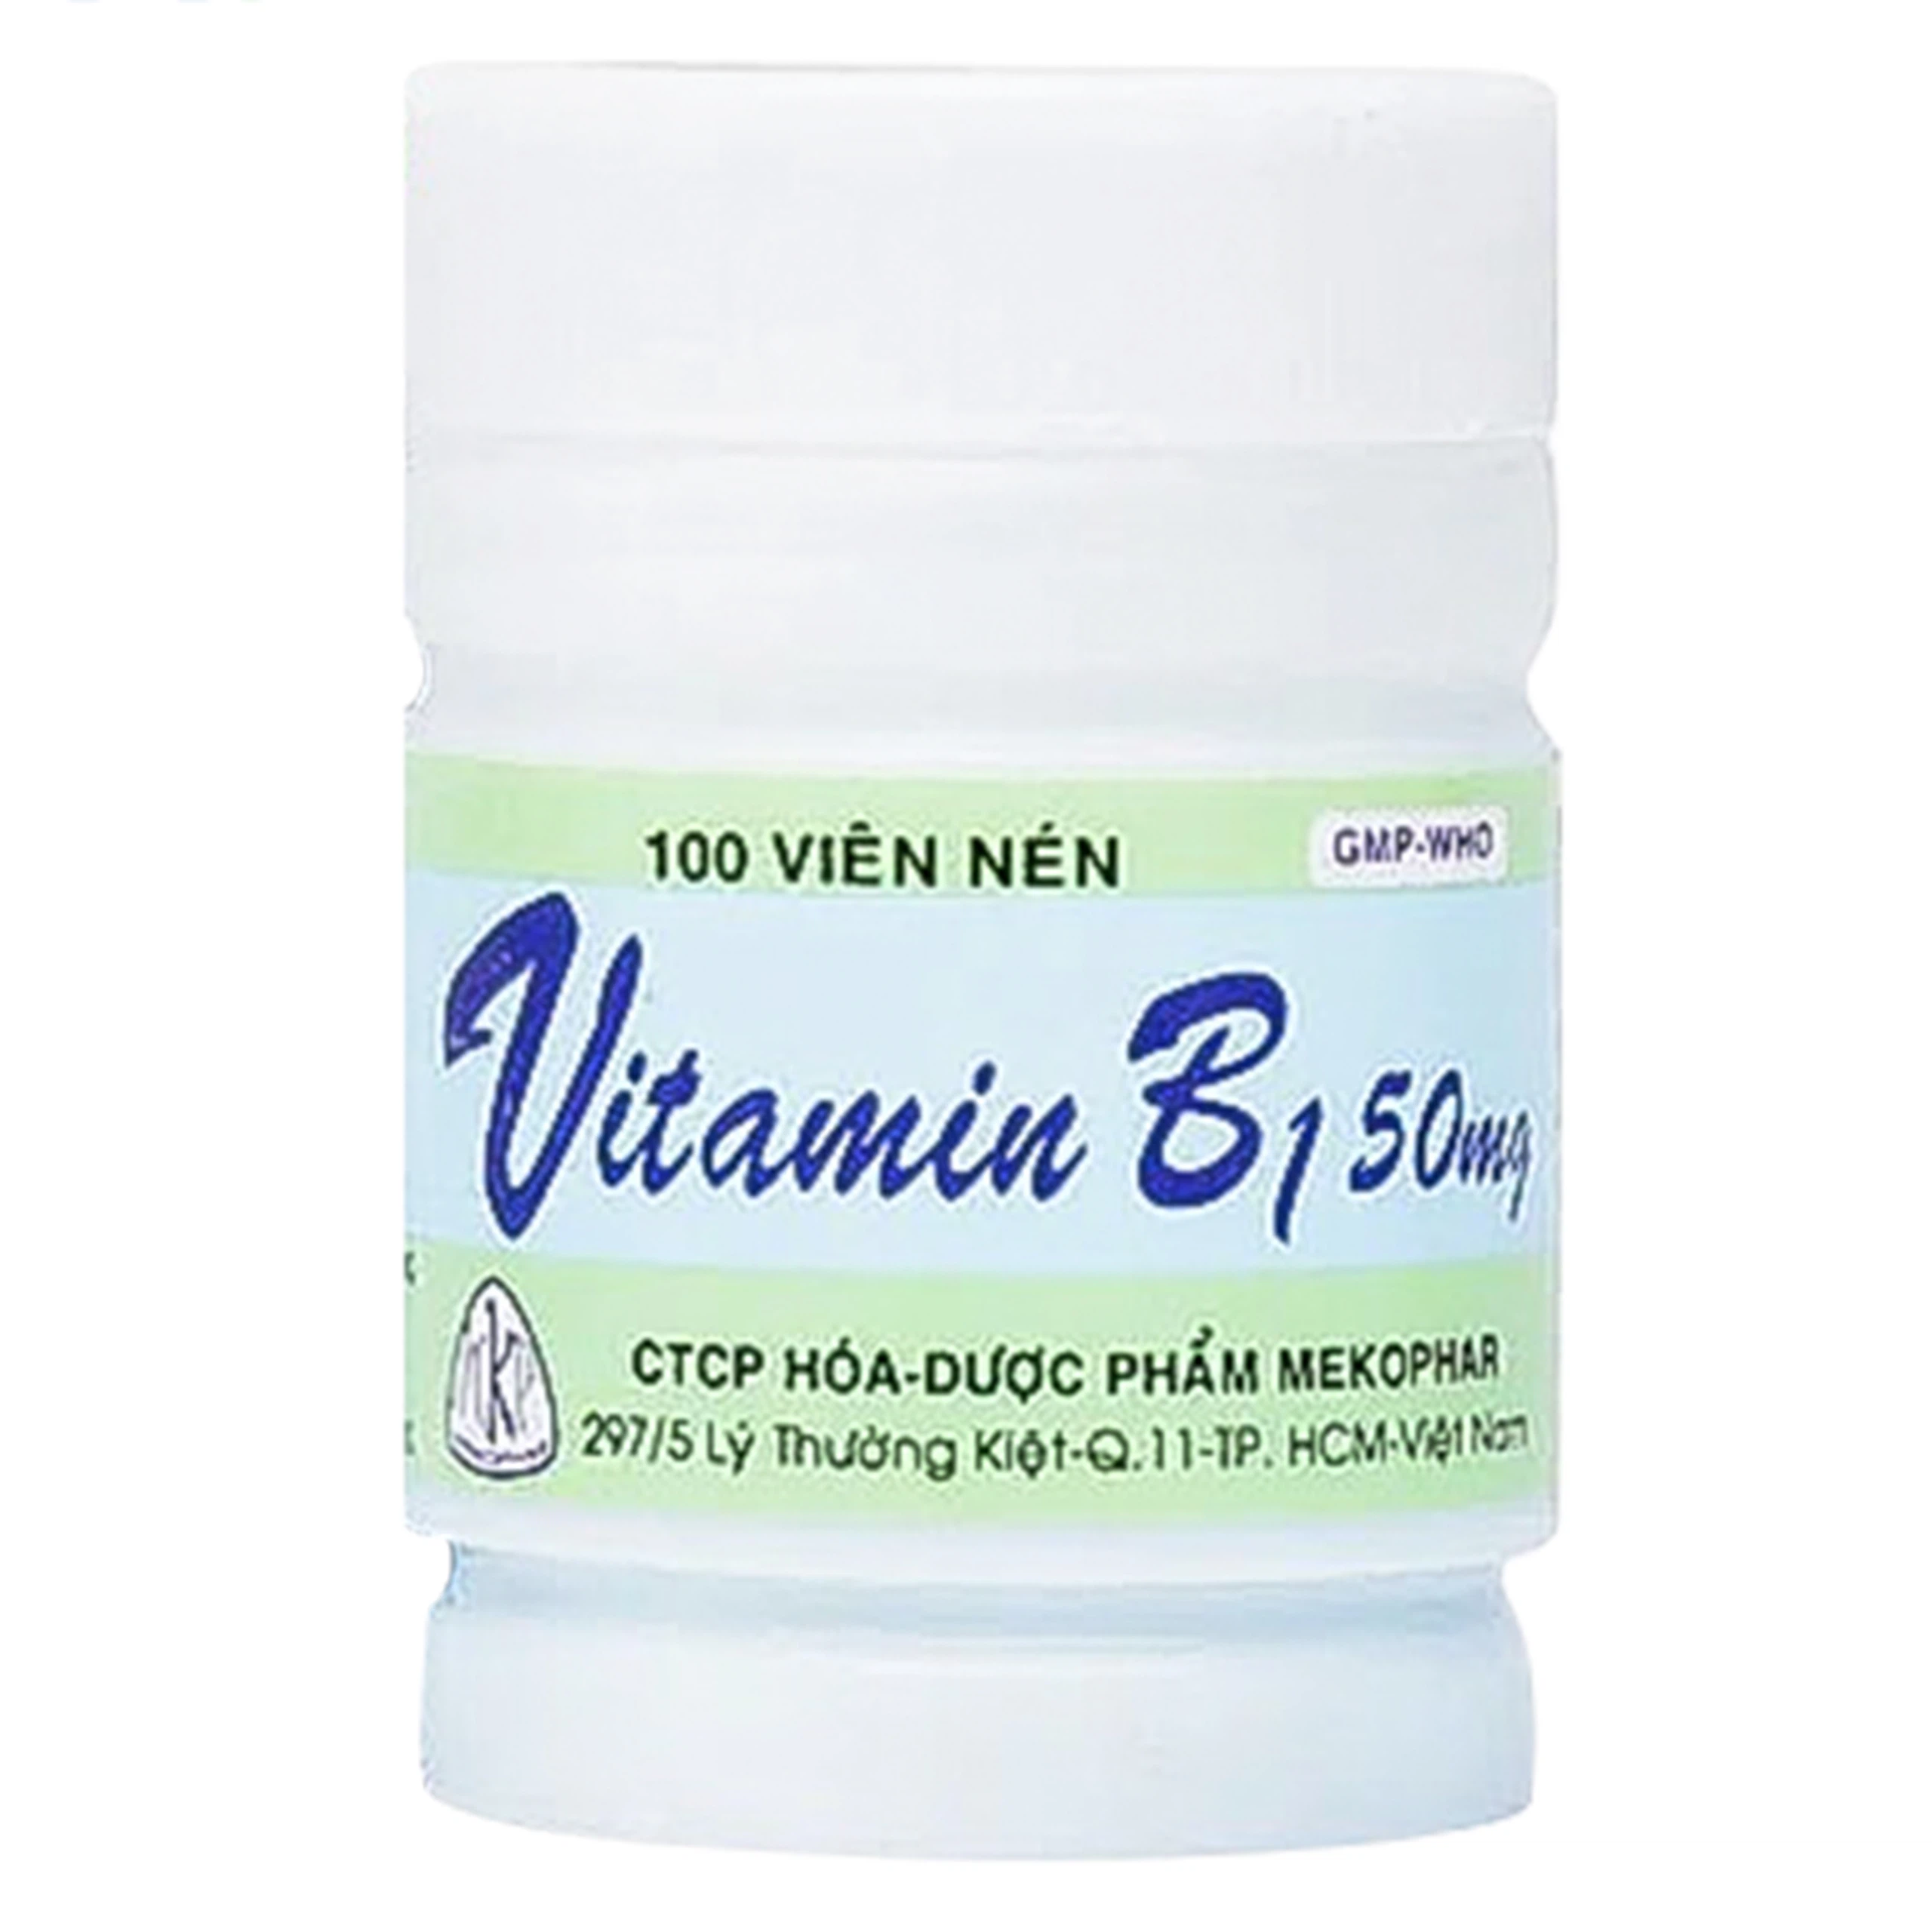 Thuốc Vitamin B1 50mg Mekophar điều trị thiếu Vitamin B (100 viên)